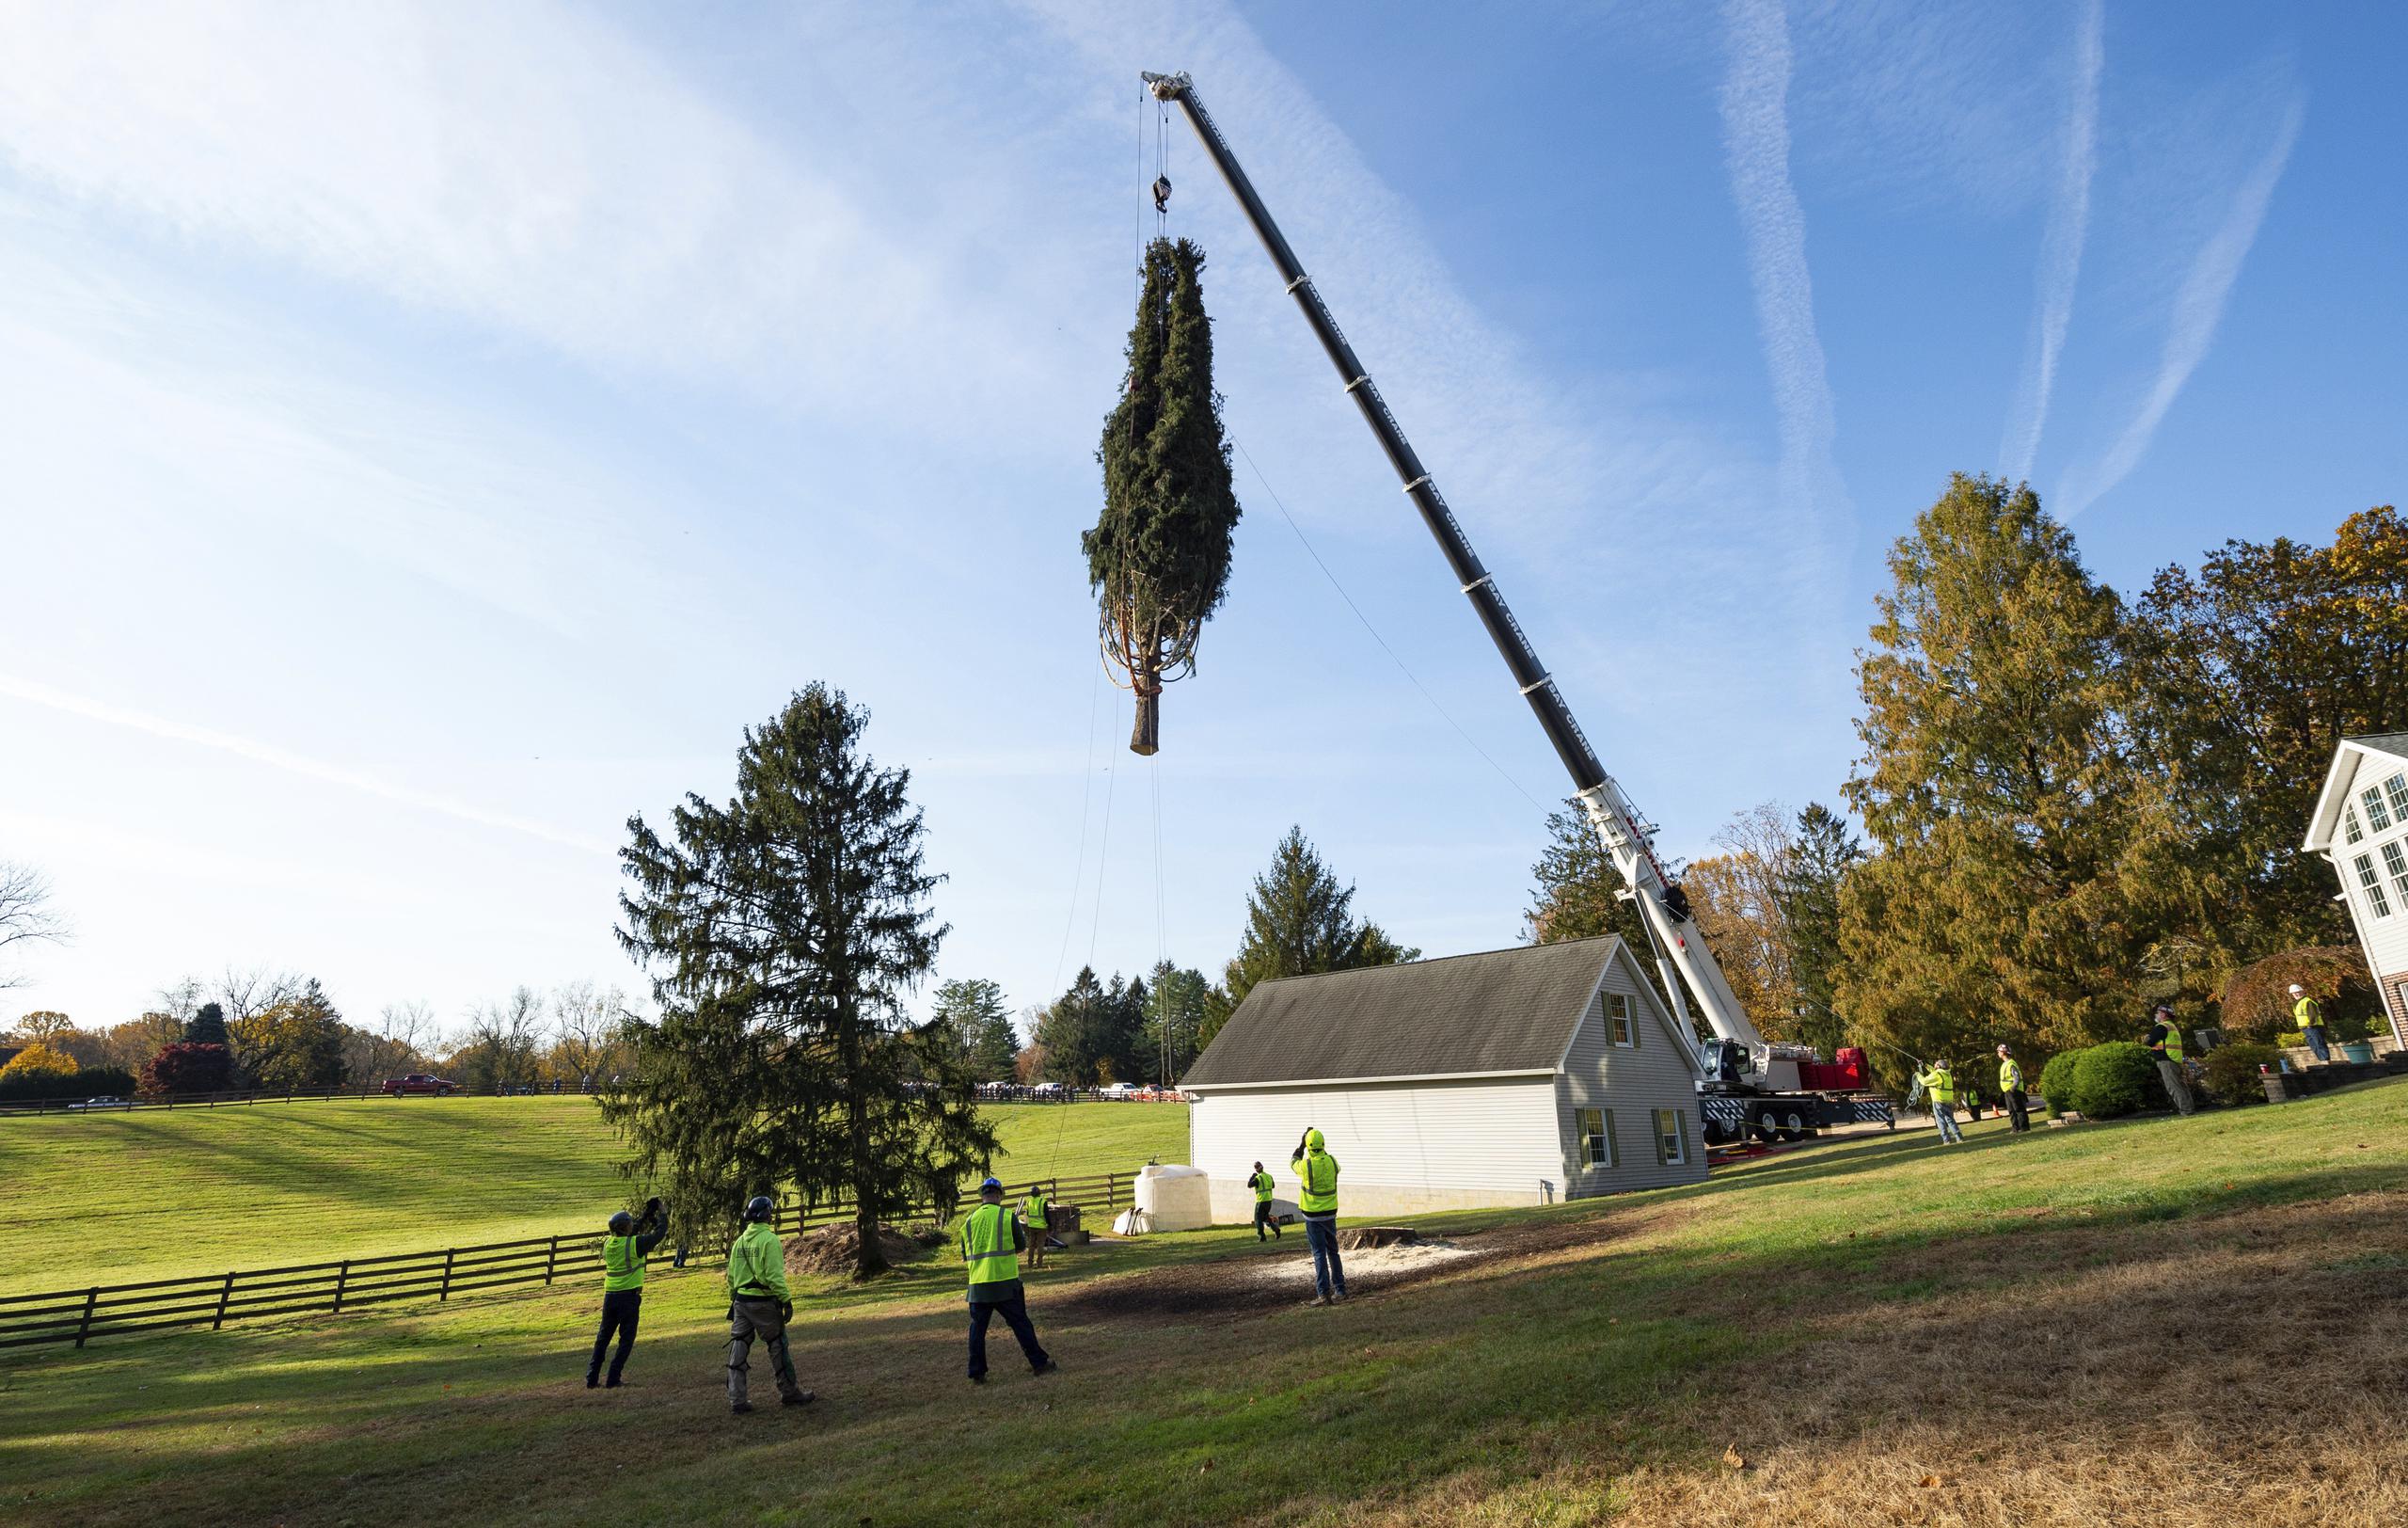 El inmenso árbol fue cortado en la propiedad de una familia de Maryland, que temía que cayera sobre su casa durante una tormenta.